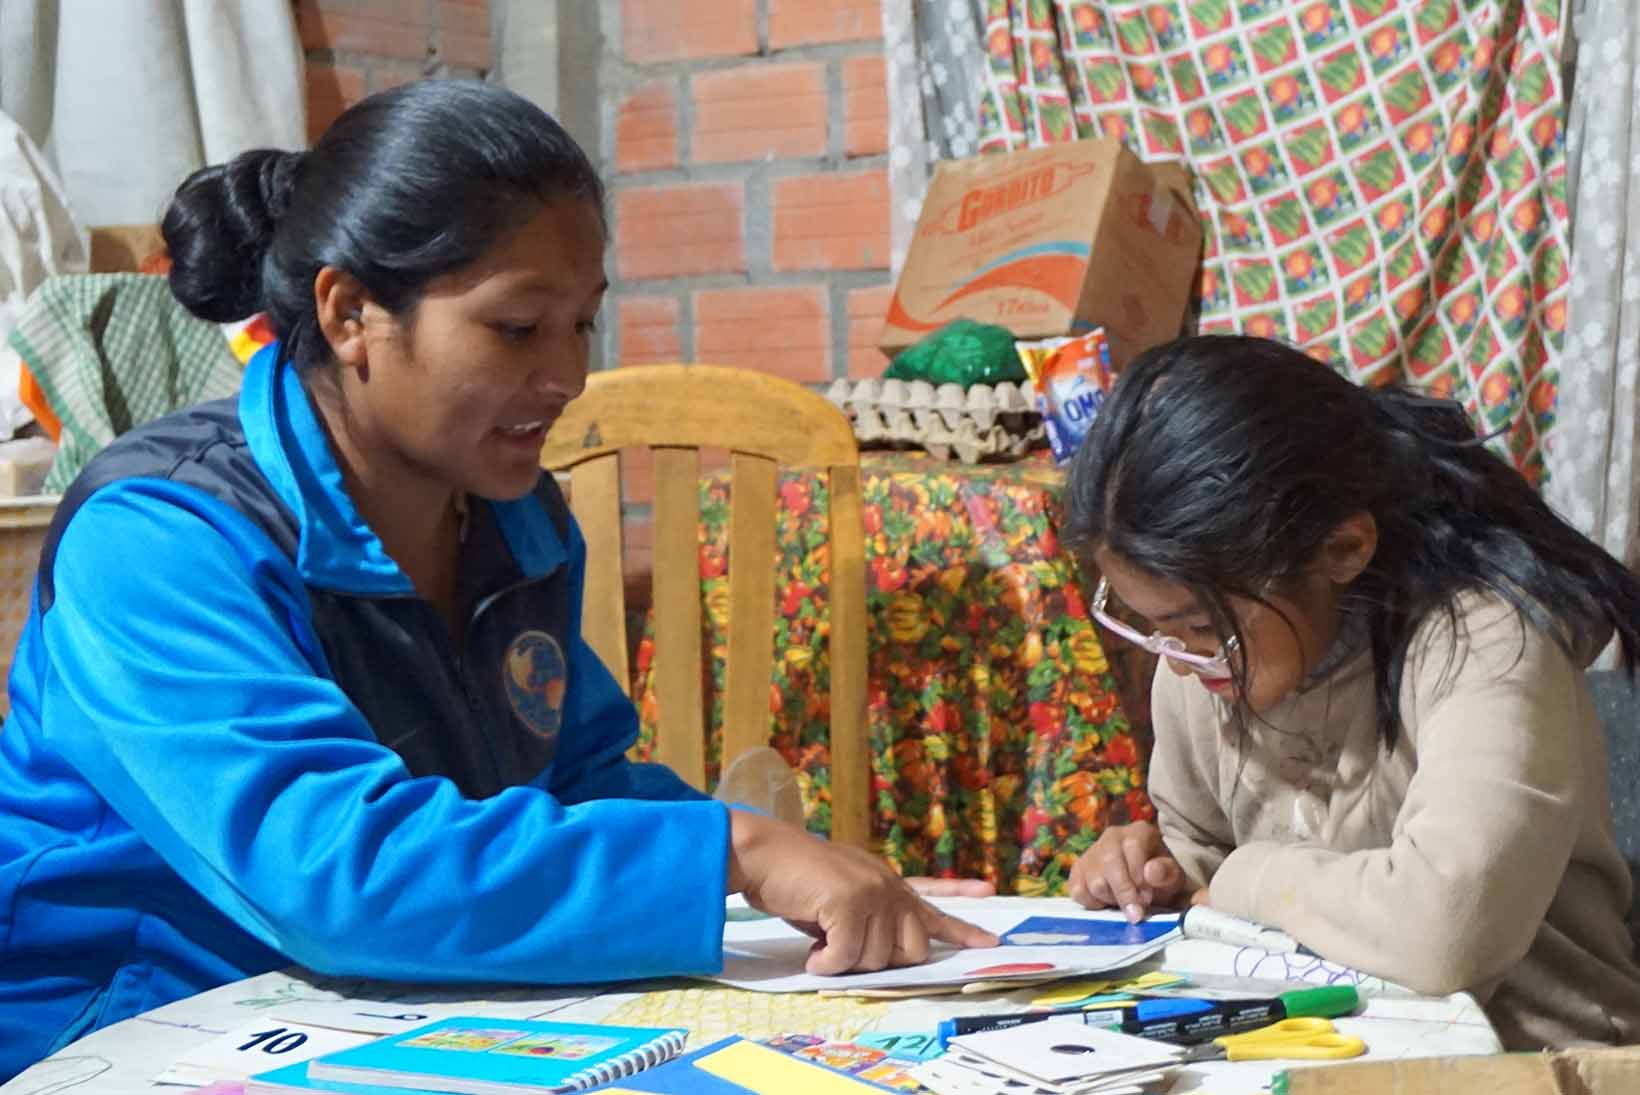 Ein Mädchen mit Lernbehinderung aus Bolivien sitzt mit einer Frau an einem Tisch und macht Förderaufgaben.